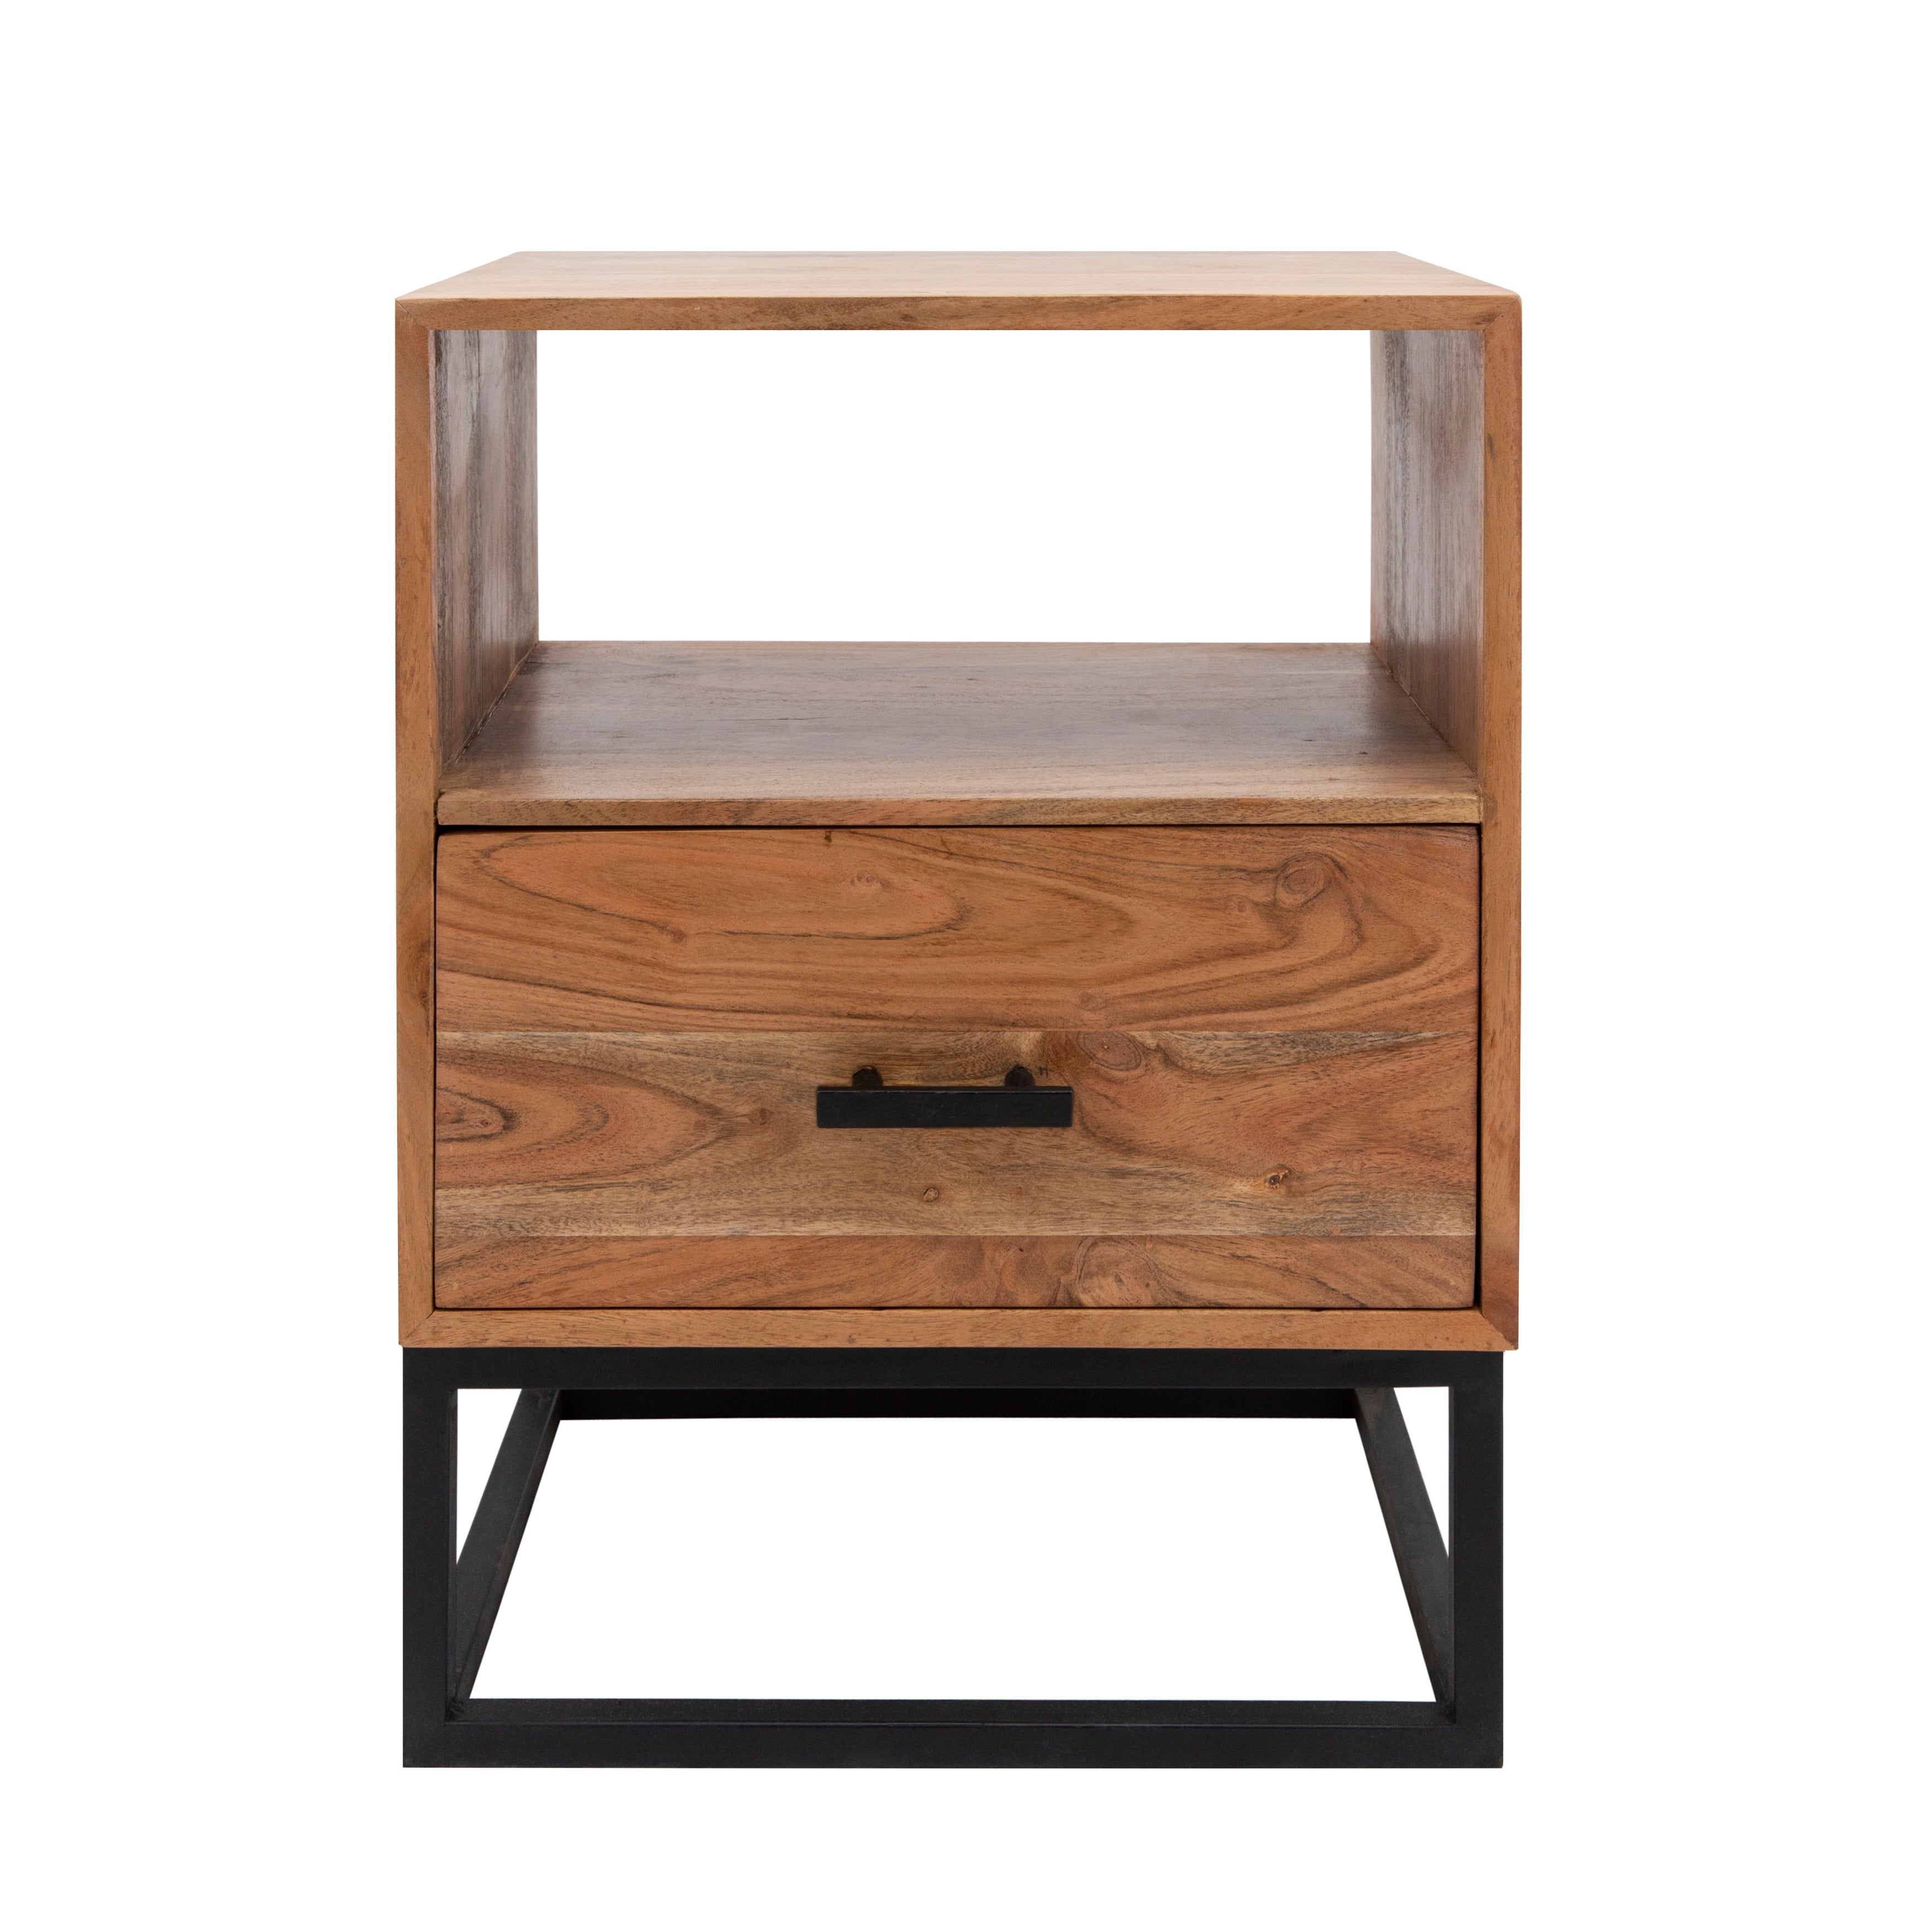 24" Wood/Metal Side Table W/ Drawer, Brown